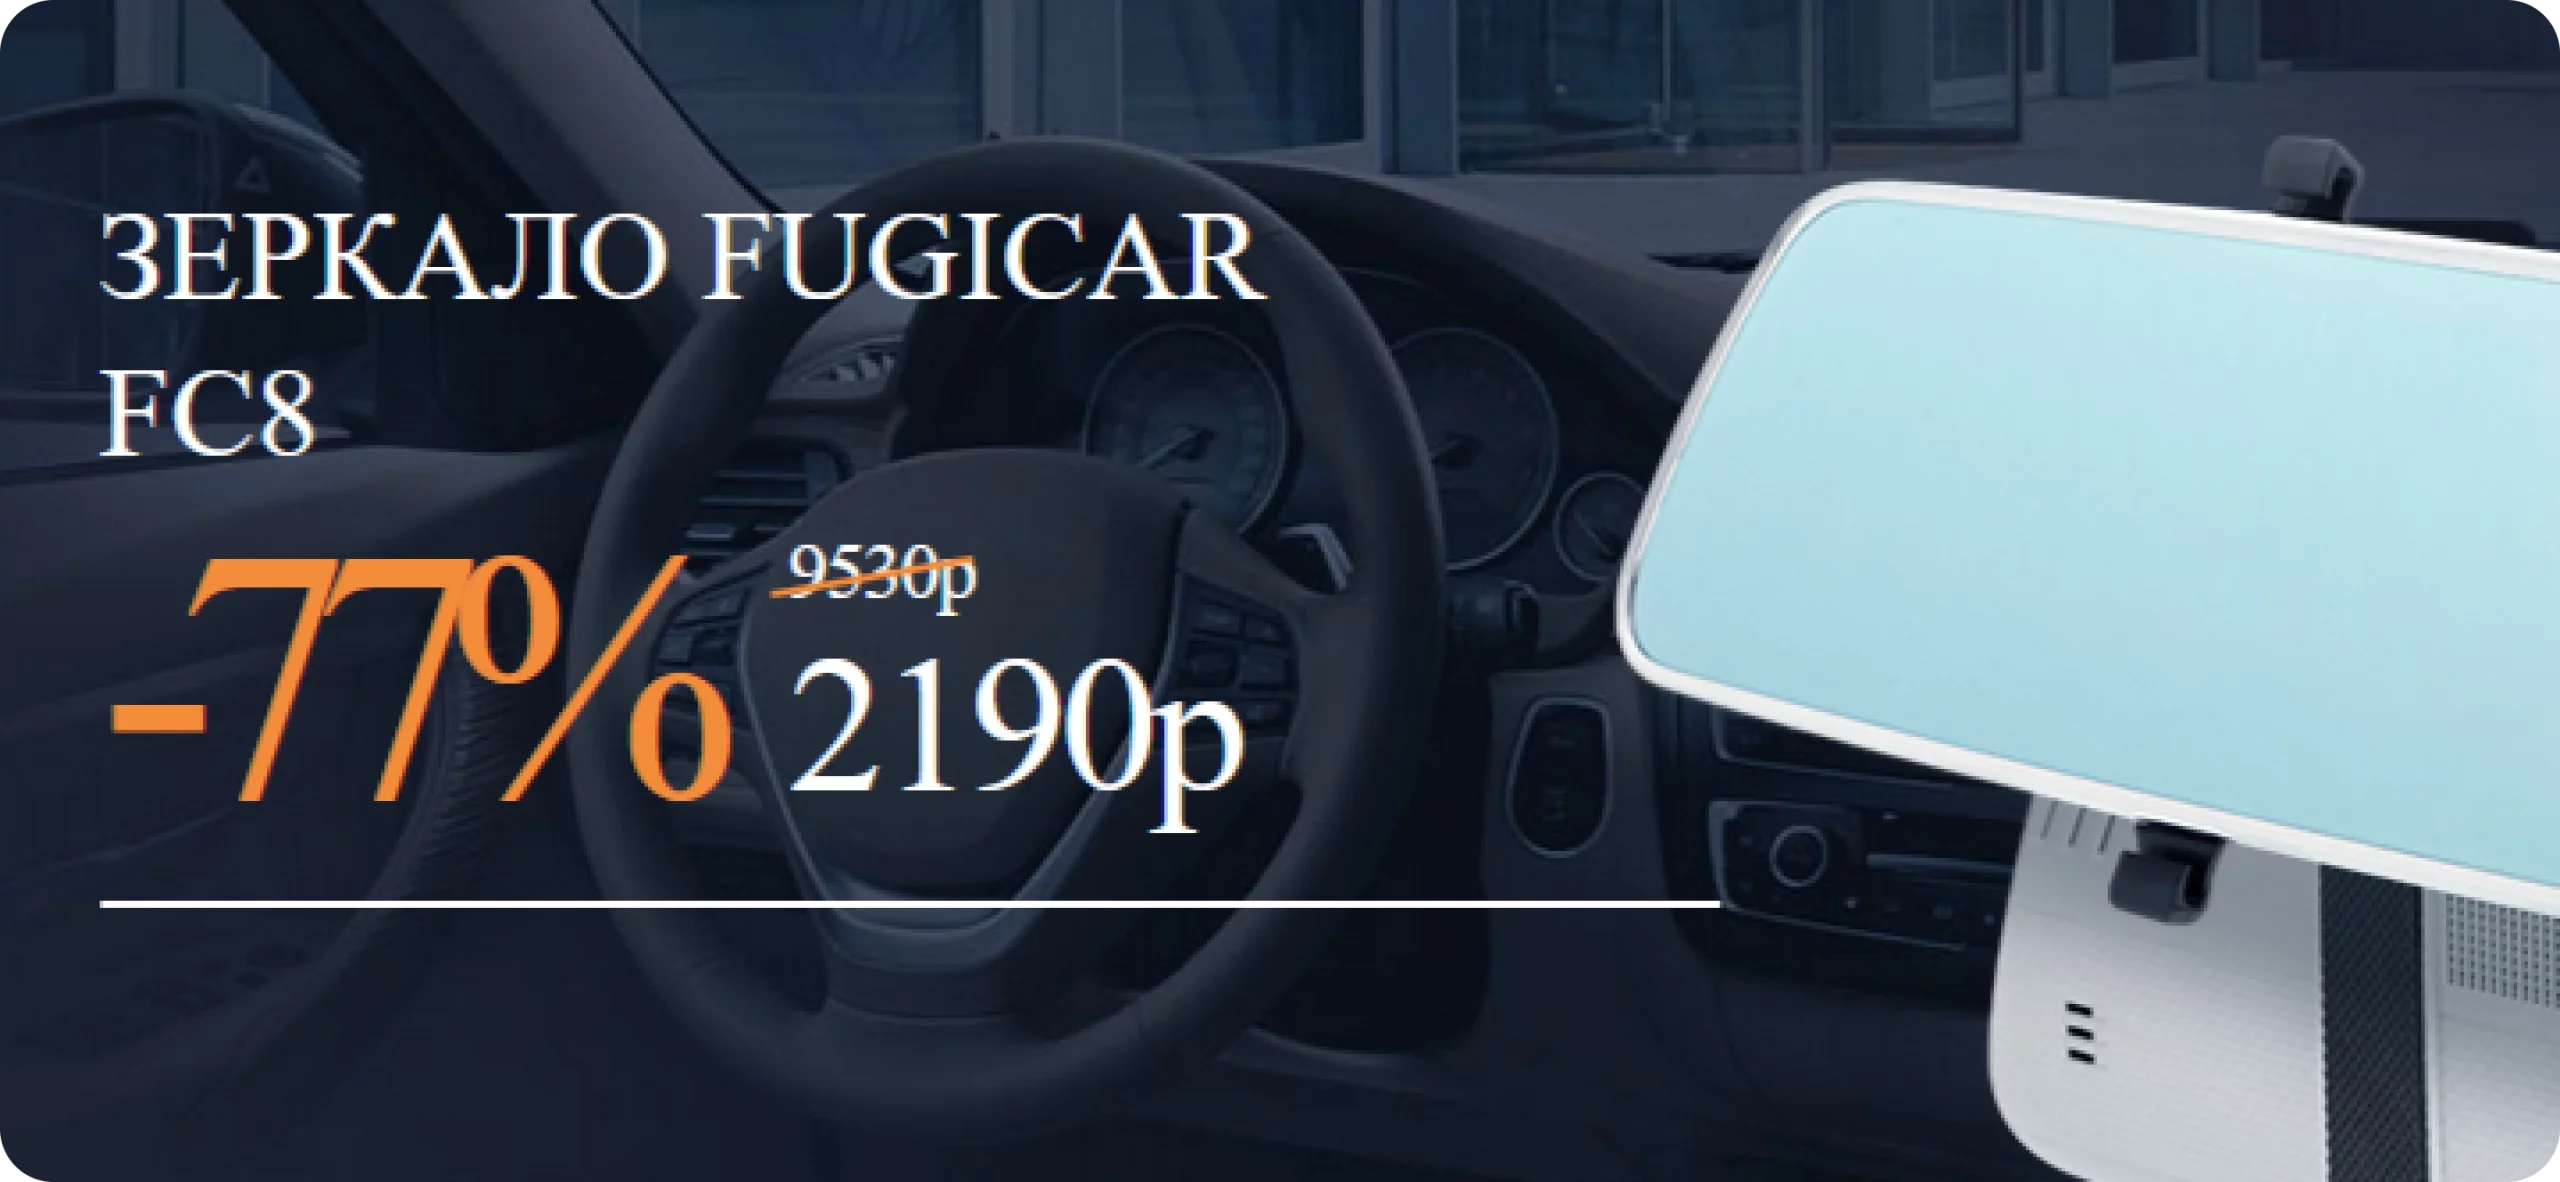 Купить зеркало-видеорегистратор Fugicar FC8 у производителя по низкой цене со скидкой — за 2190 рублей!